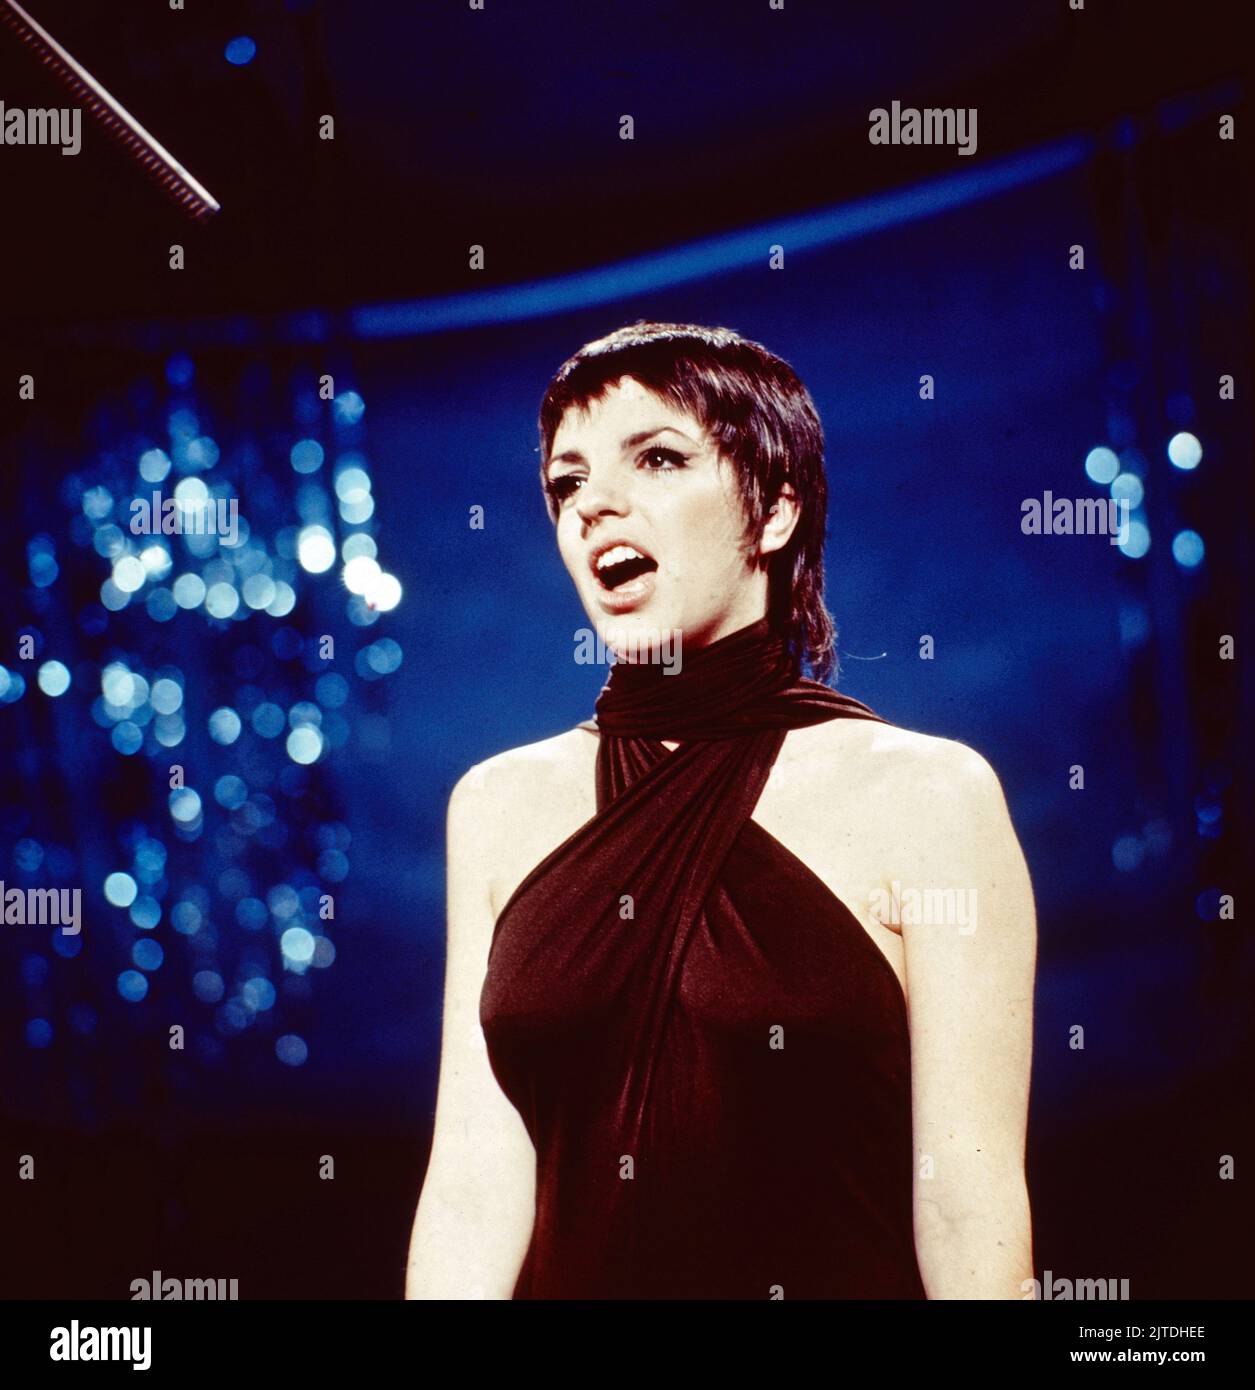 Liza Minelli, amerikanische Sängerin und Schauspielerin, hier bei einem Auftritt in Deutschland, 1987. Liza Minelli, amerikanische Schauspielerin und Sängerin, Performance in Deutschland, 1987. Stockfoto